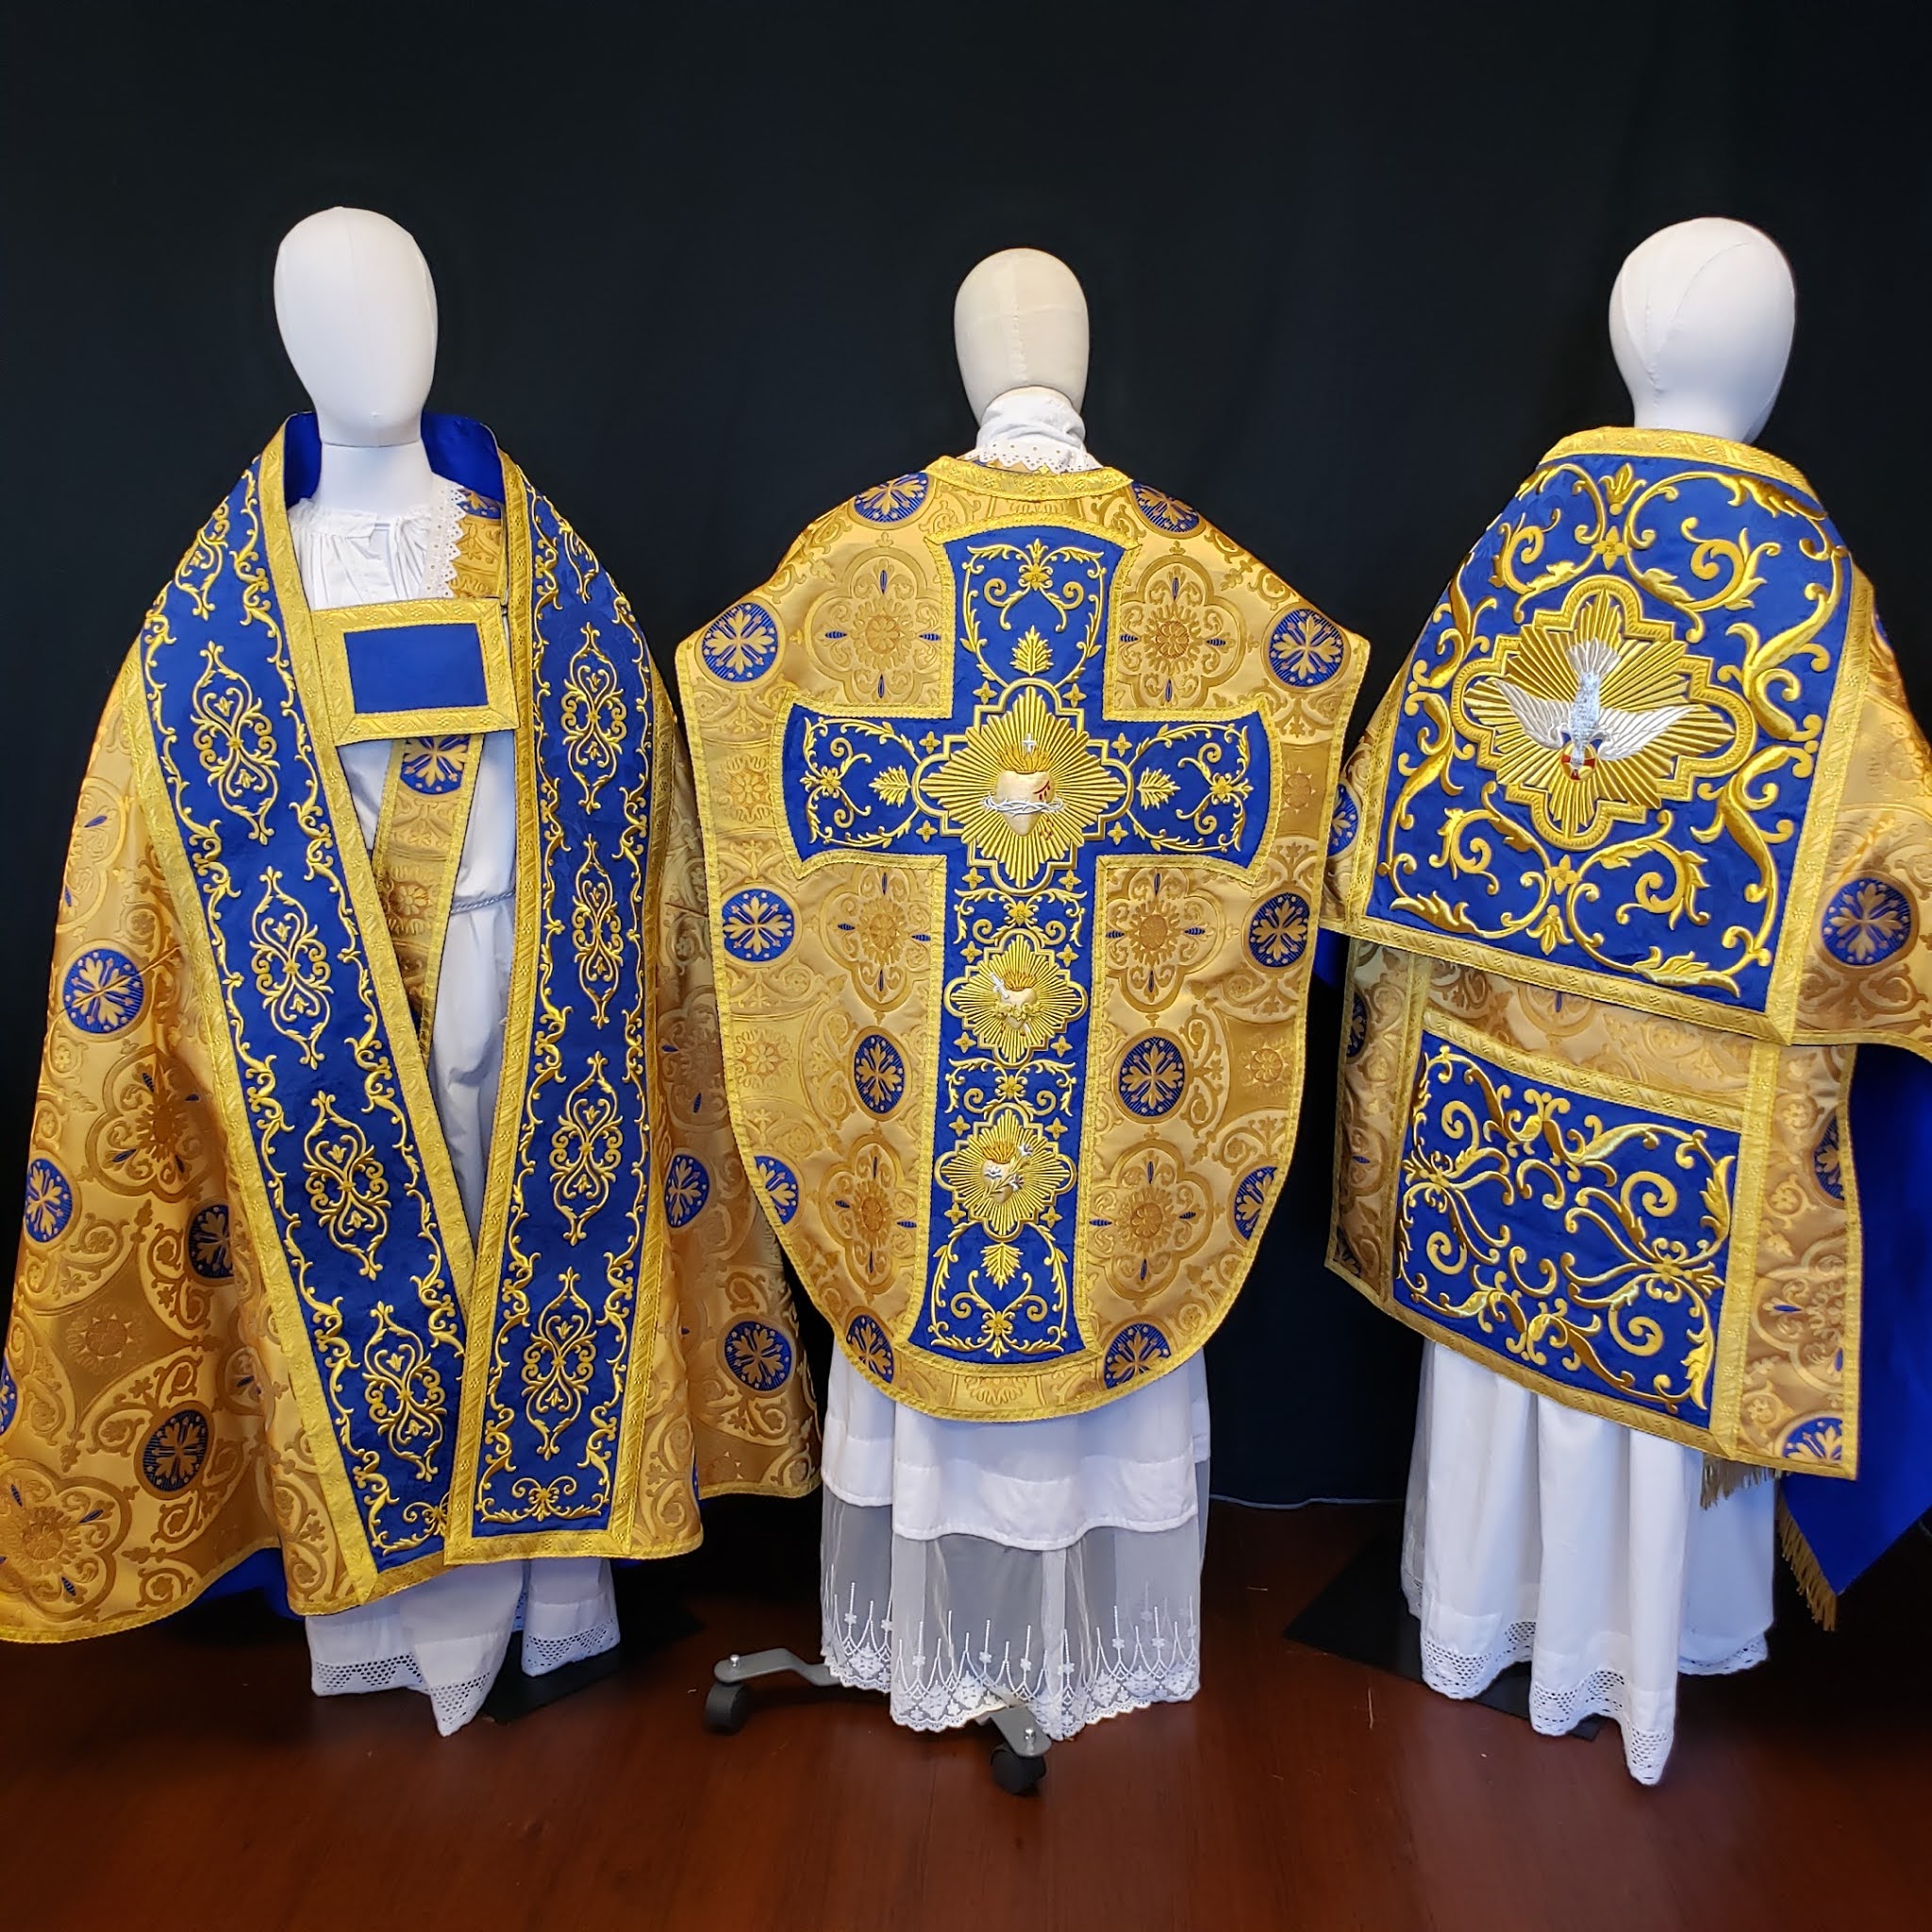 Свастика на одежде священников